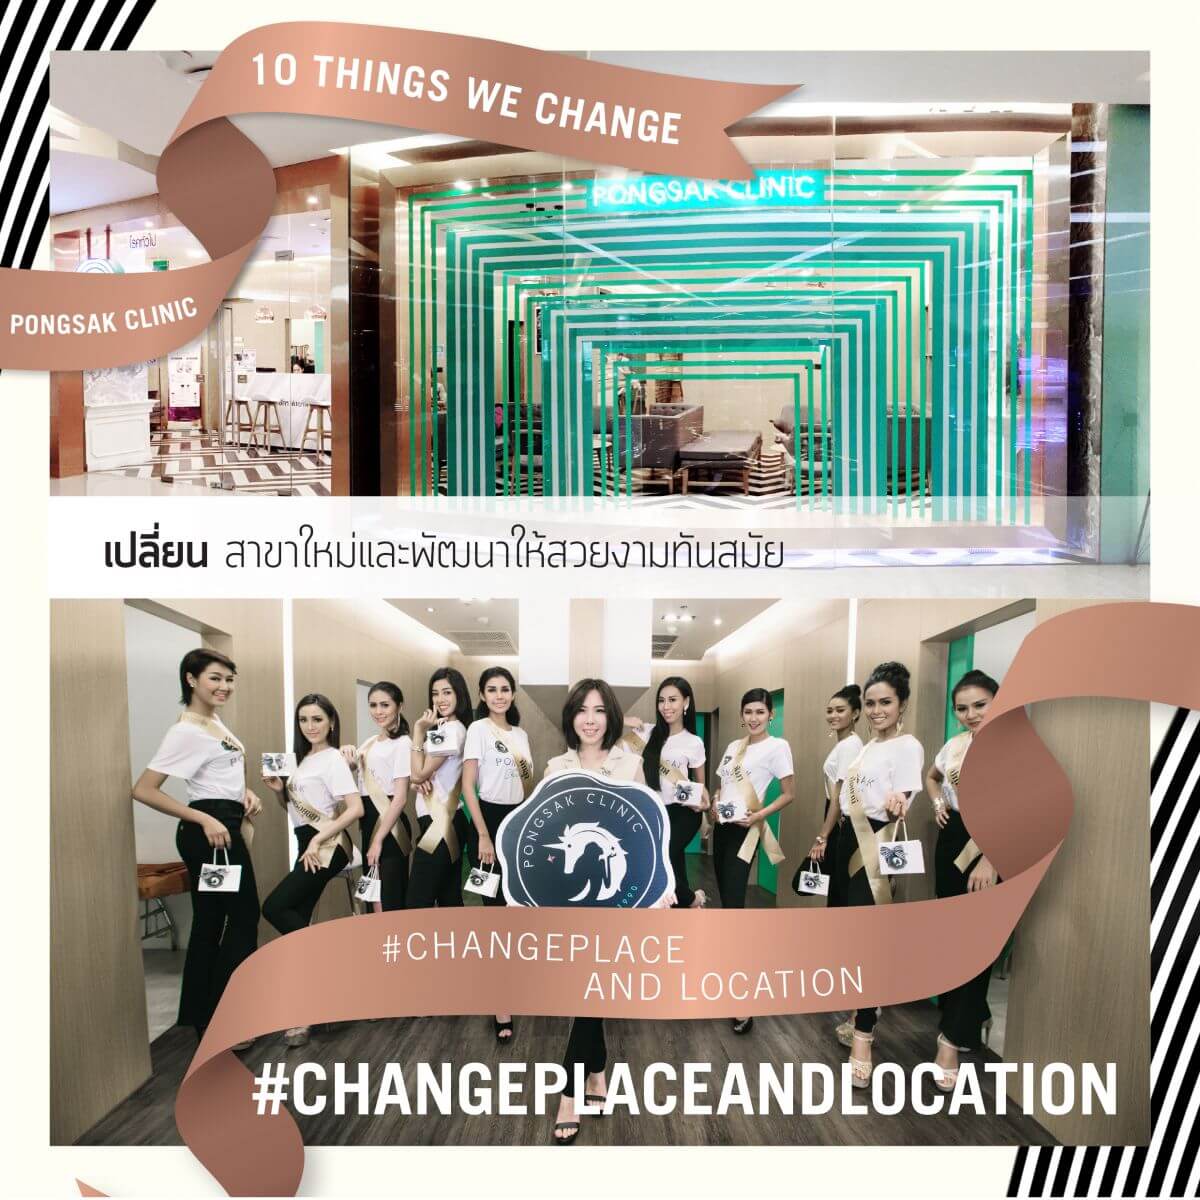 พงศ์ศักดิ์คลินิก Pongsak Clinic -Pongsak Change place and location